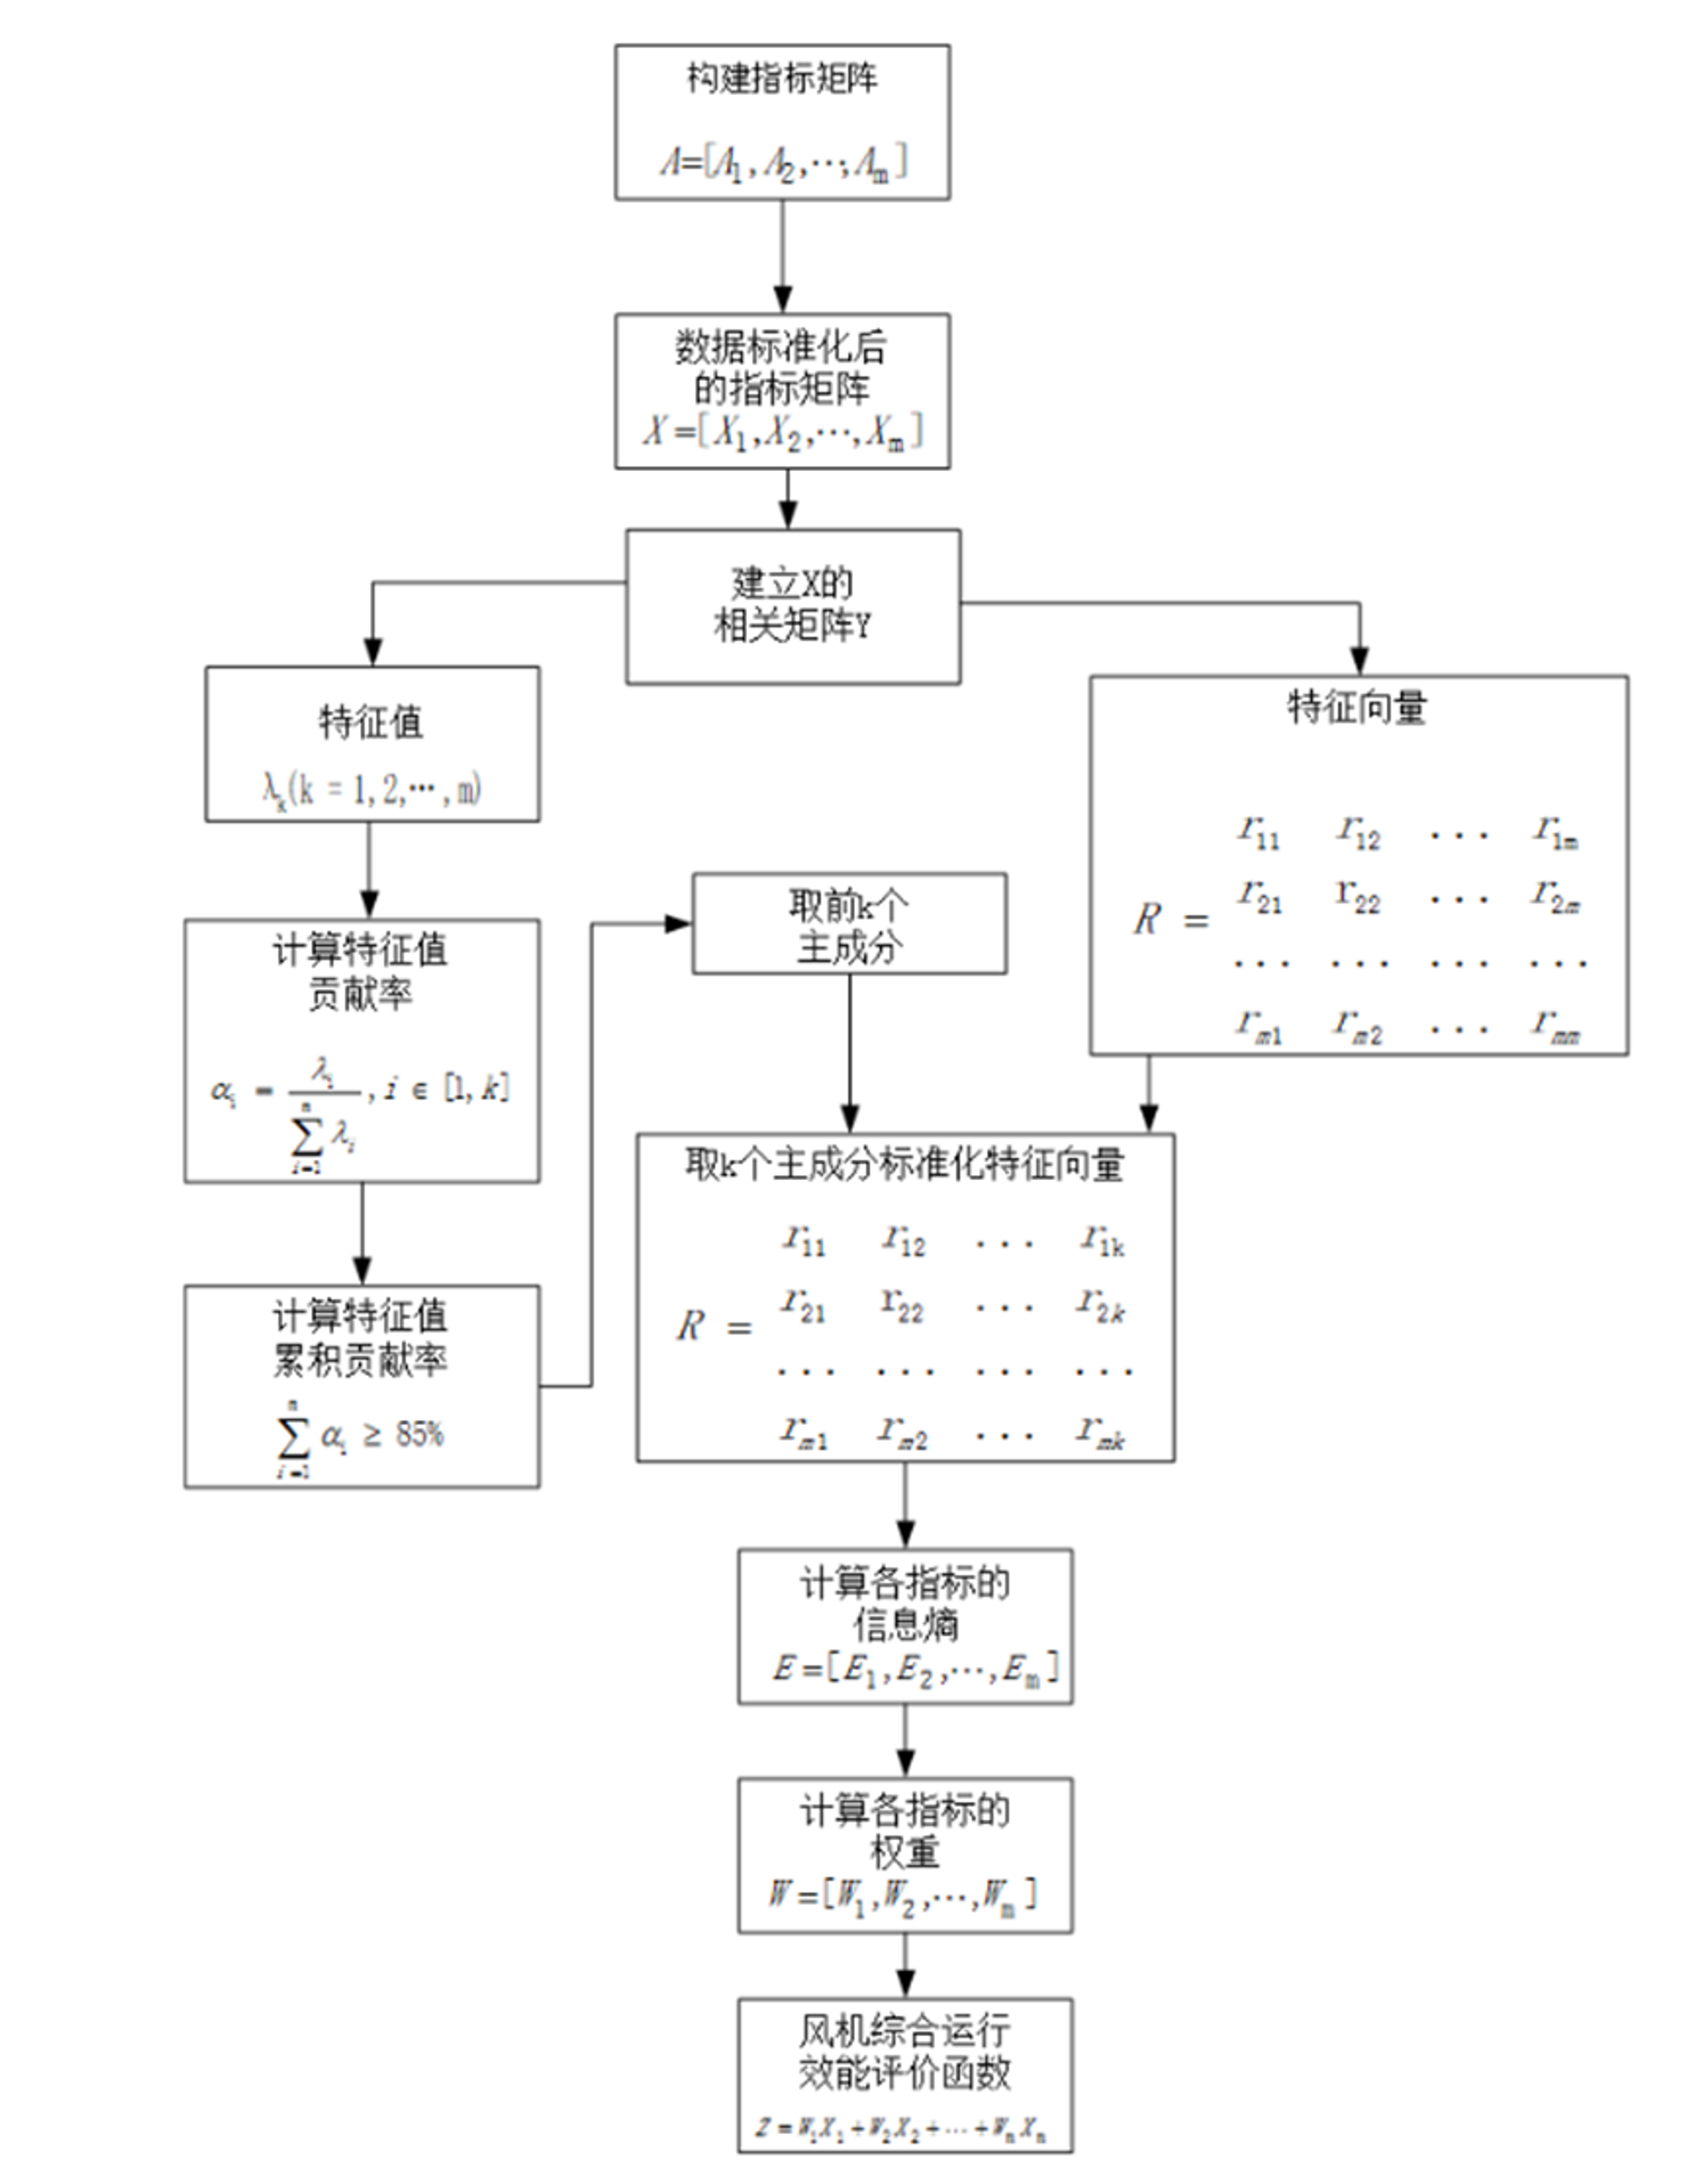 图 11  流程图